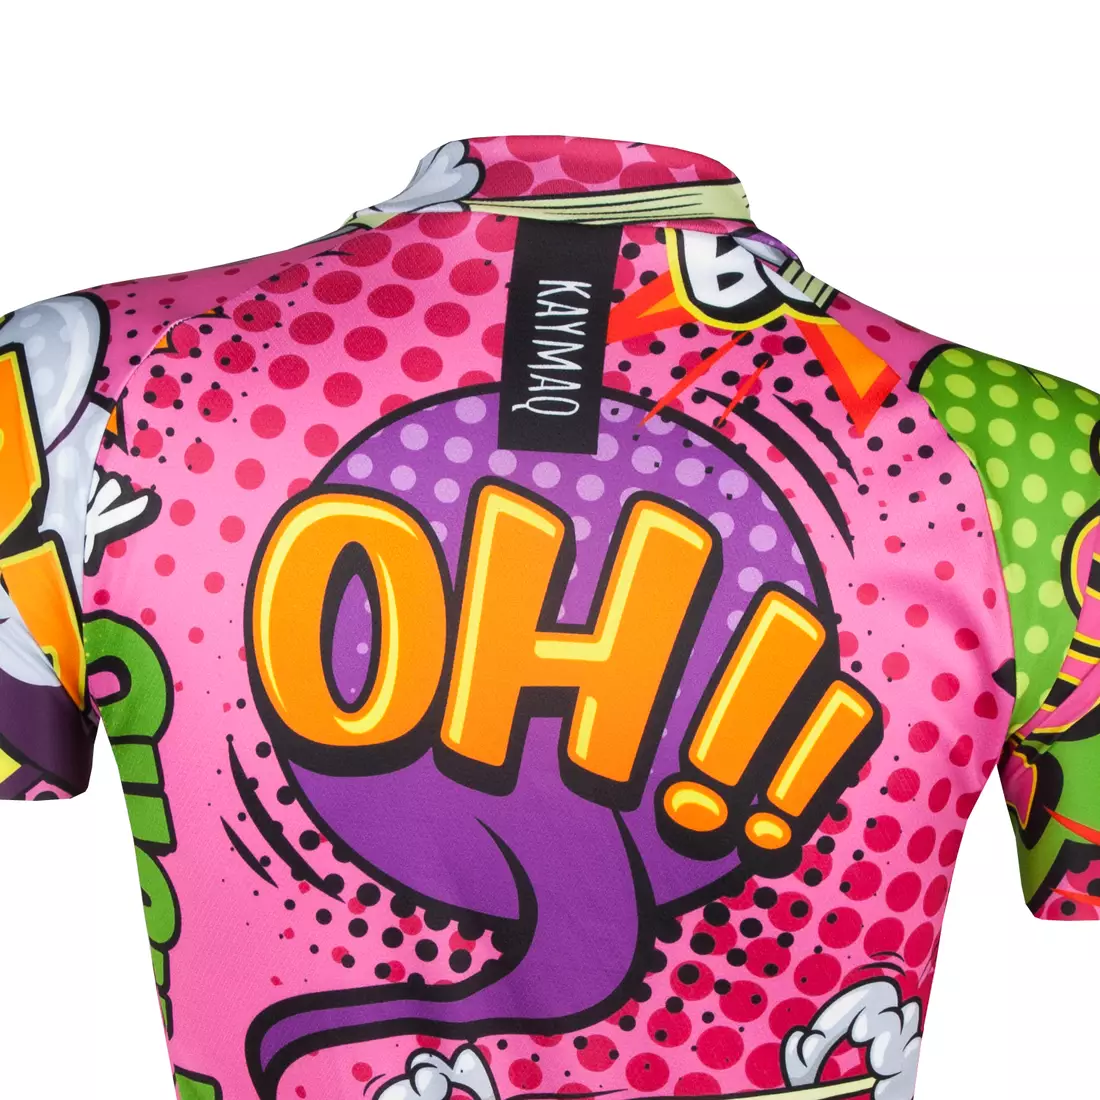 KAYMAQ DESIGN W27 dámský cyklistický dres, krátký rukáv, růžový